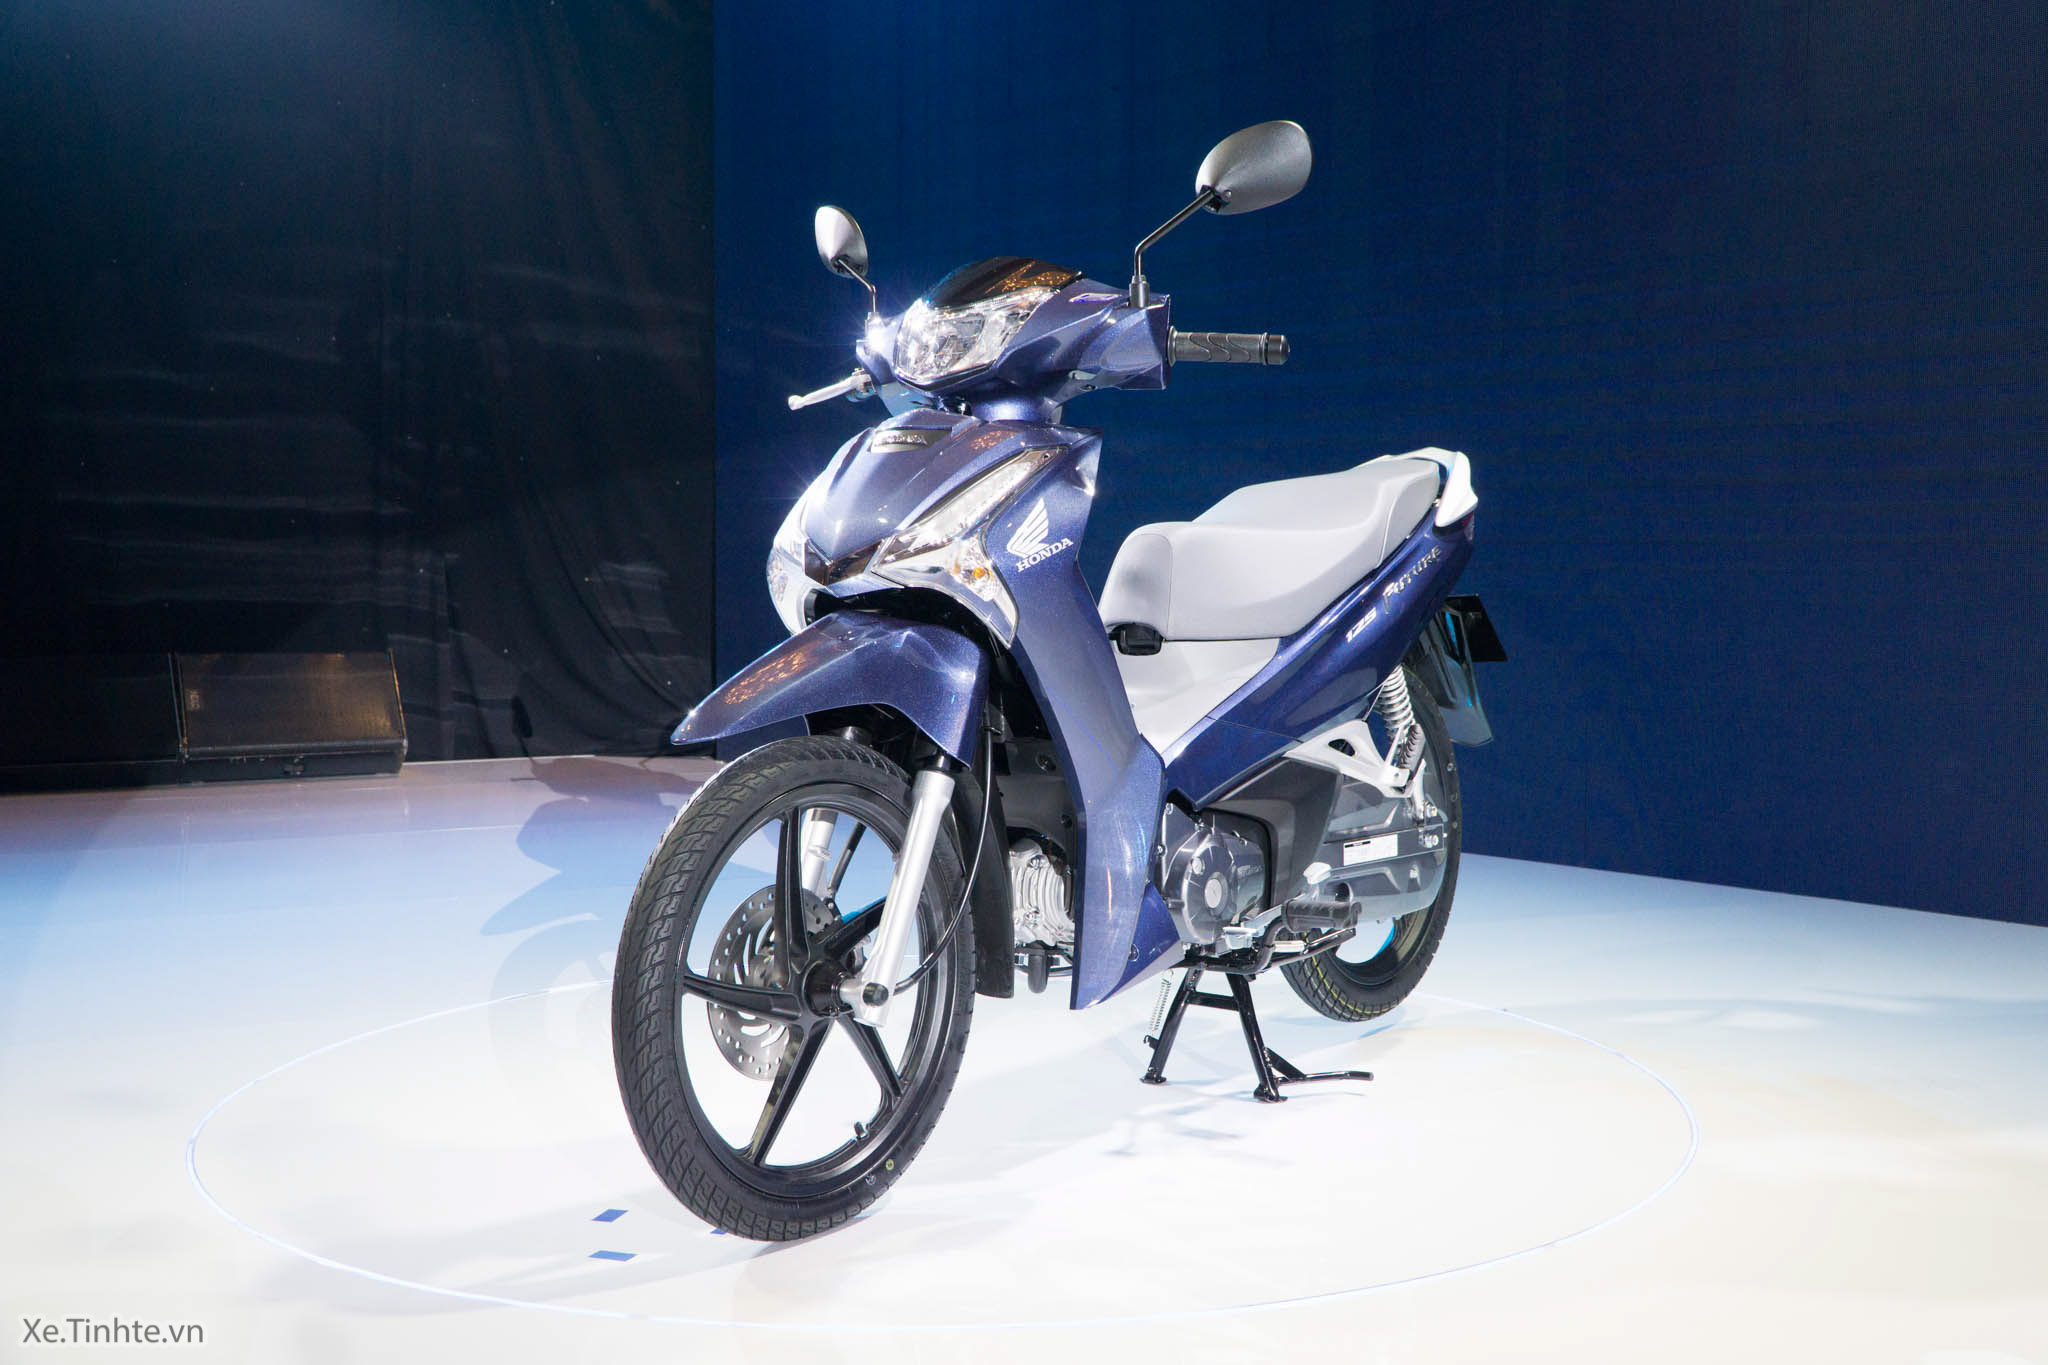 Honda VN giới thiệu Future FI 125 thế hệ mới, đèn pha LED, cốp rộng hơn ...